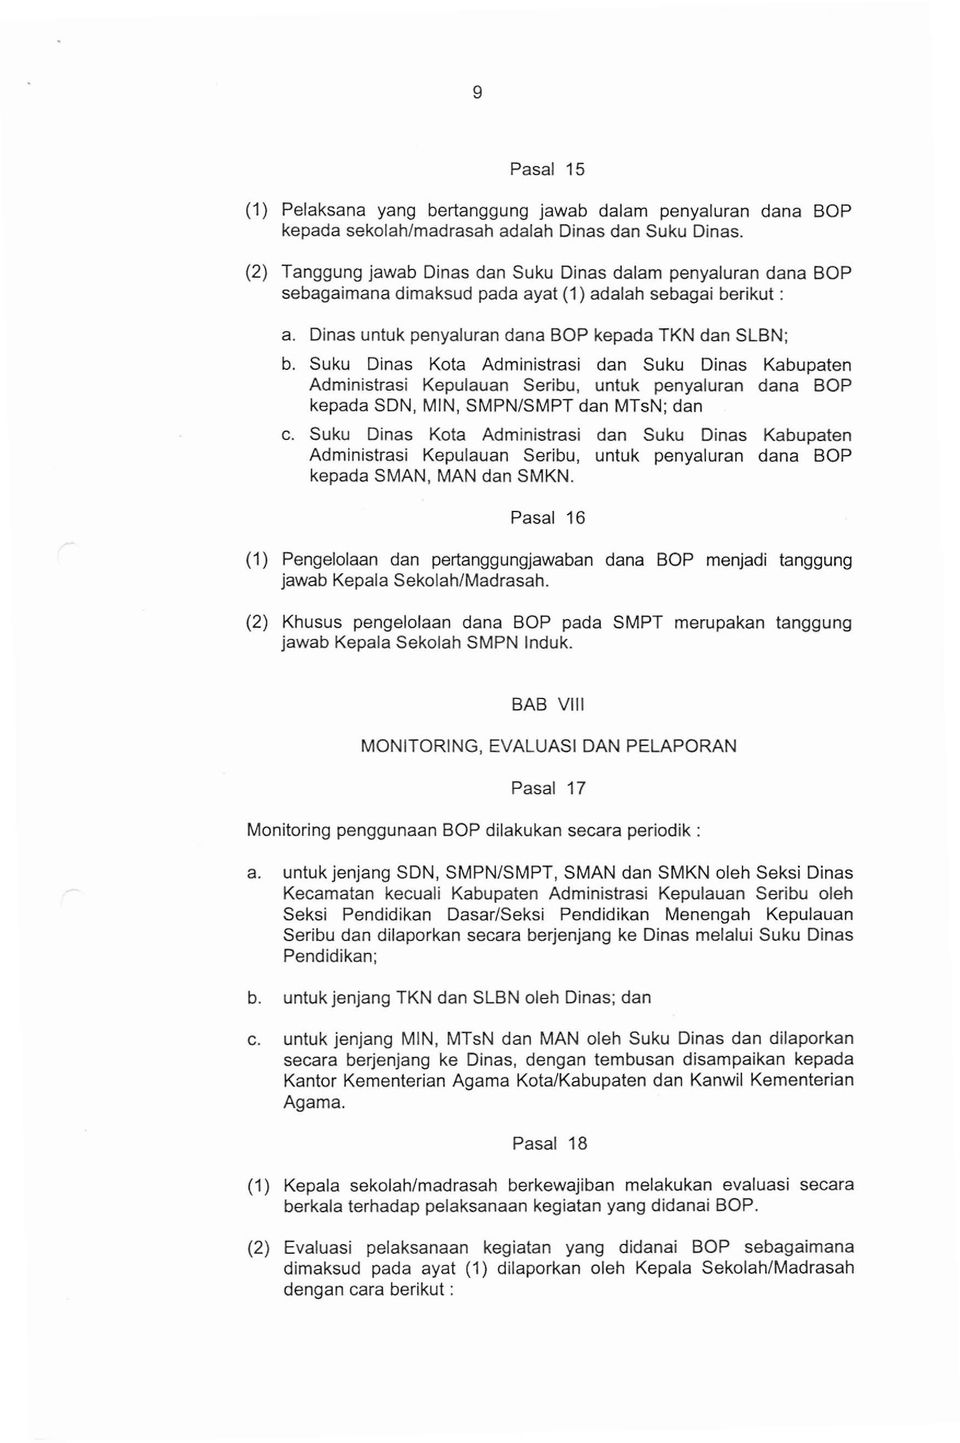 Suku Dinas Kota Administrasi dan Suku Dinas Kabupaten Administrasi Kepulauan Seribu, untuk penyaluran dana BOP kepada SDN, MIN, SMPN/SMPT dan MTsN; dan c.